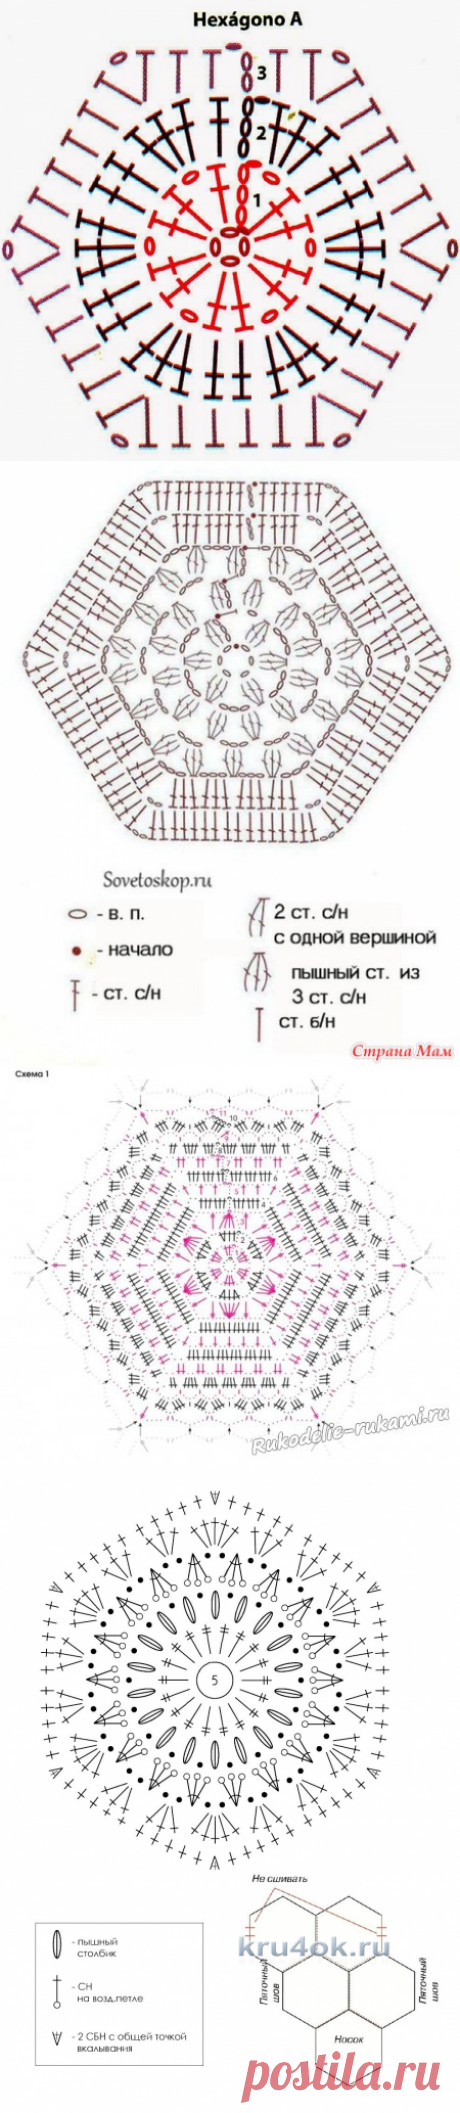 Шестиугольники крючком схемы для тапочек